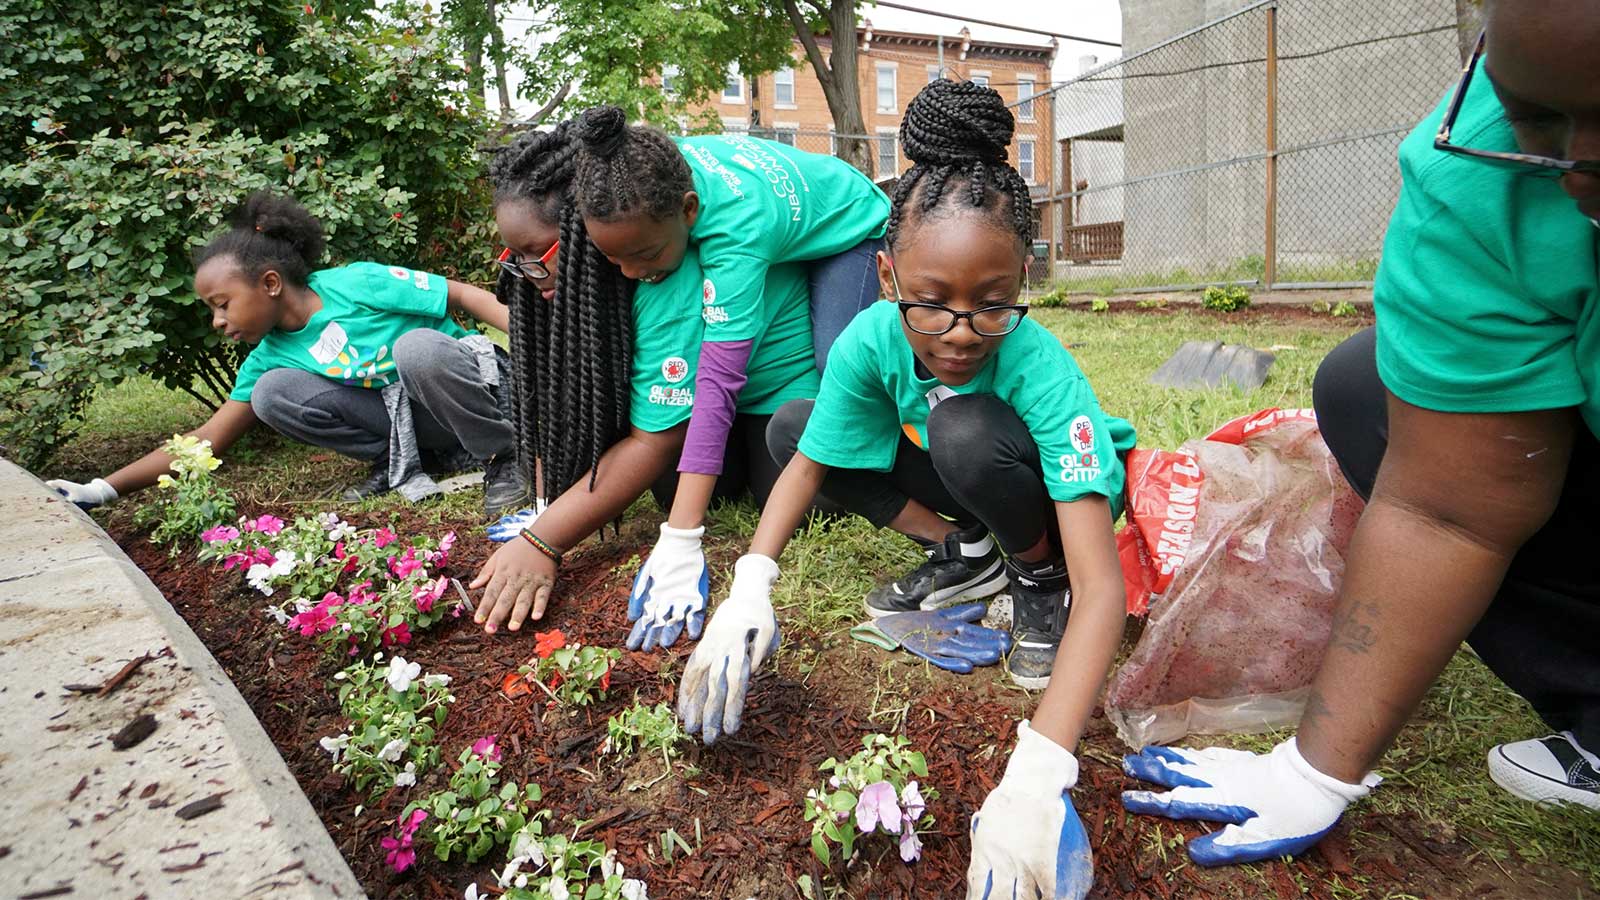 Comcast Cares Day volunteers gardening